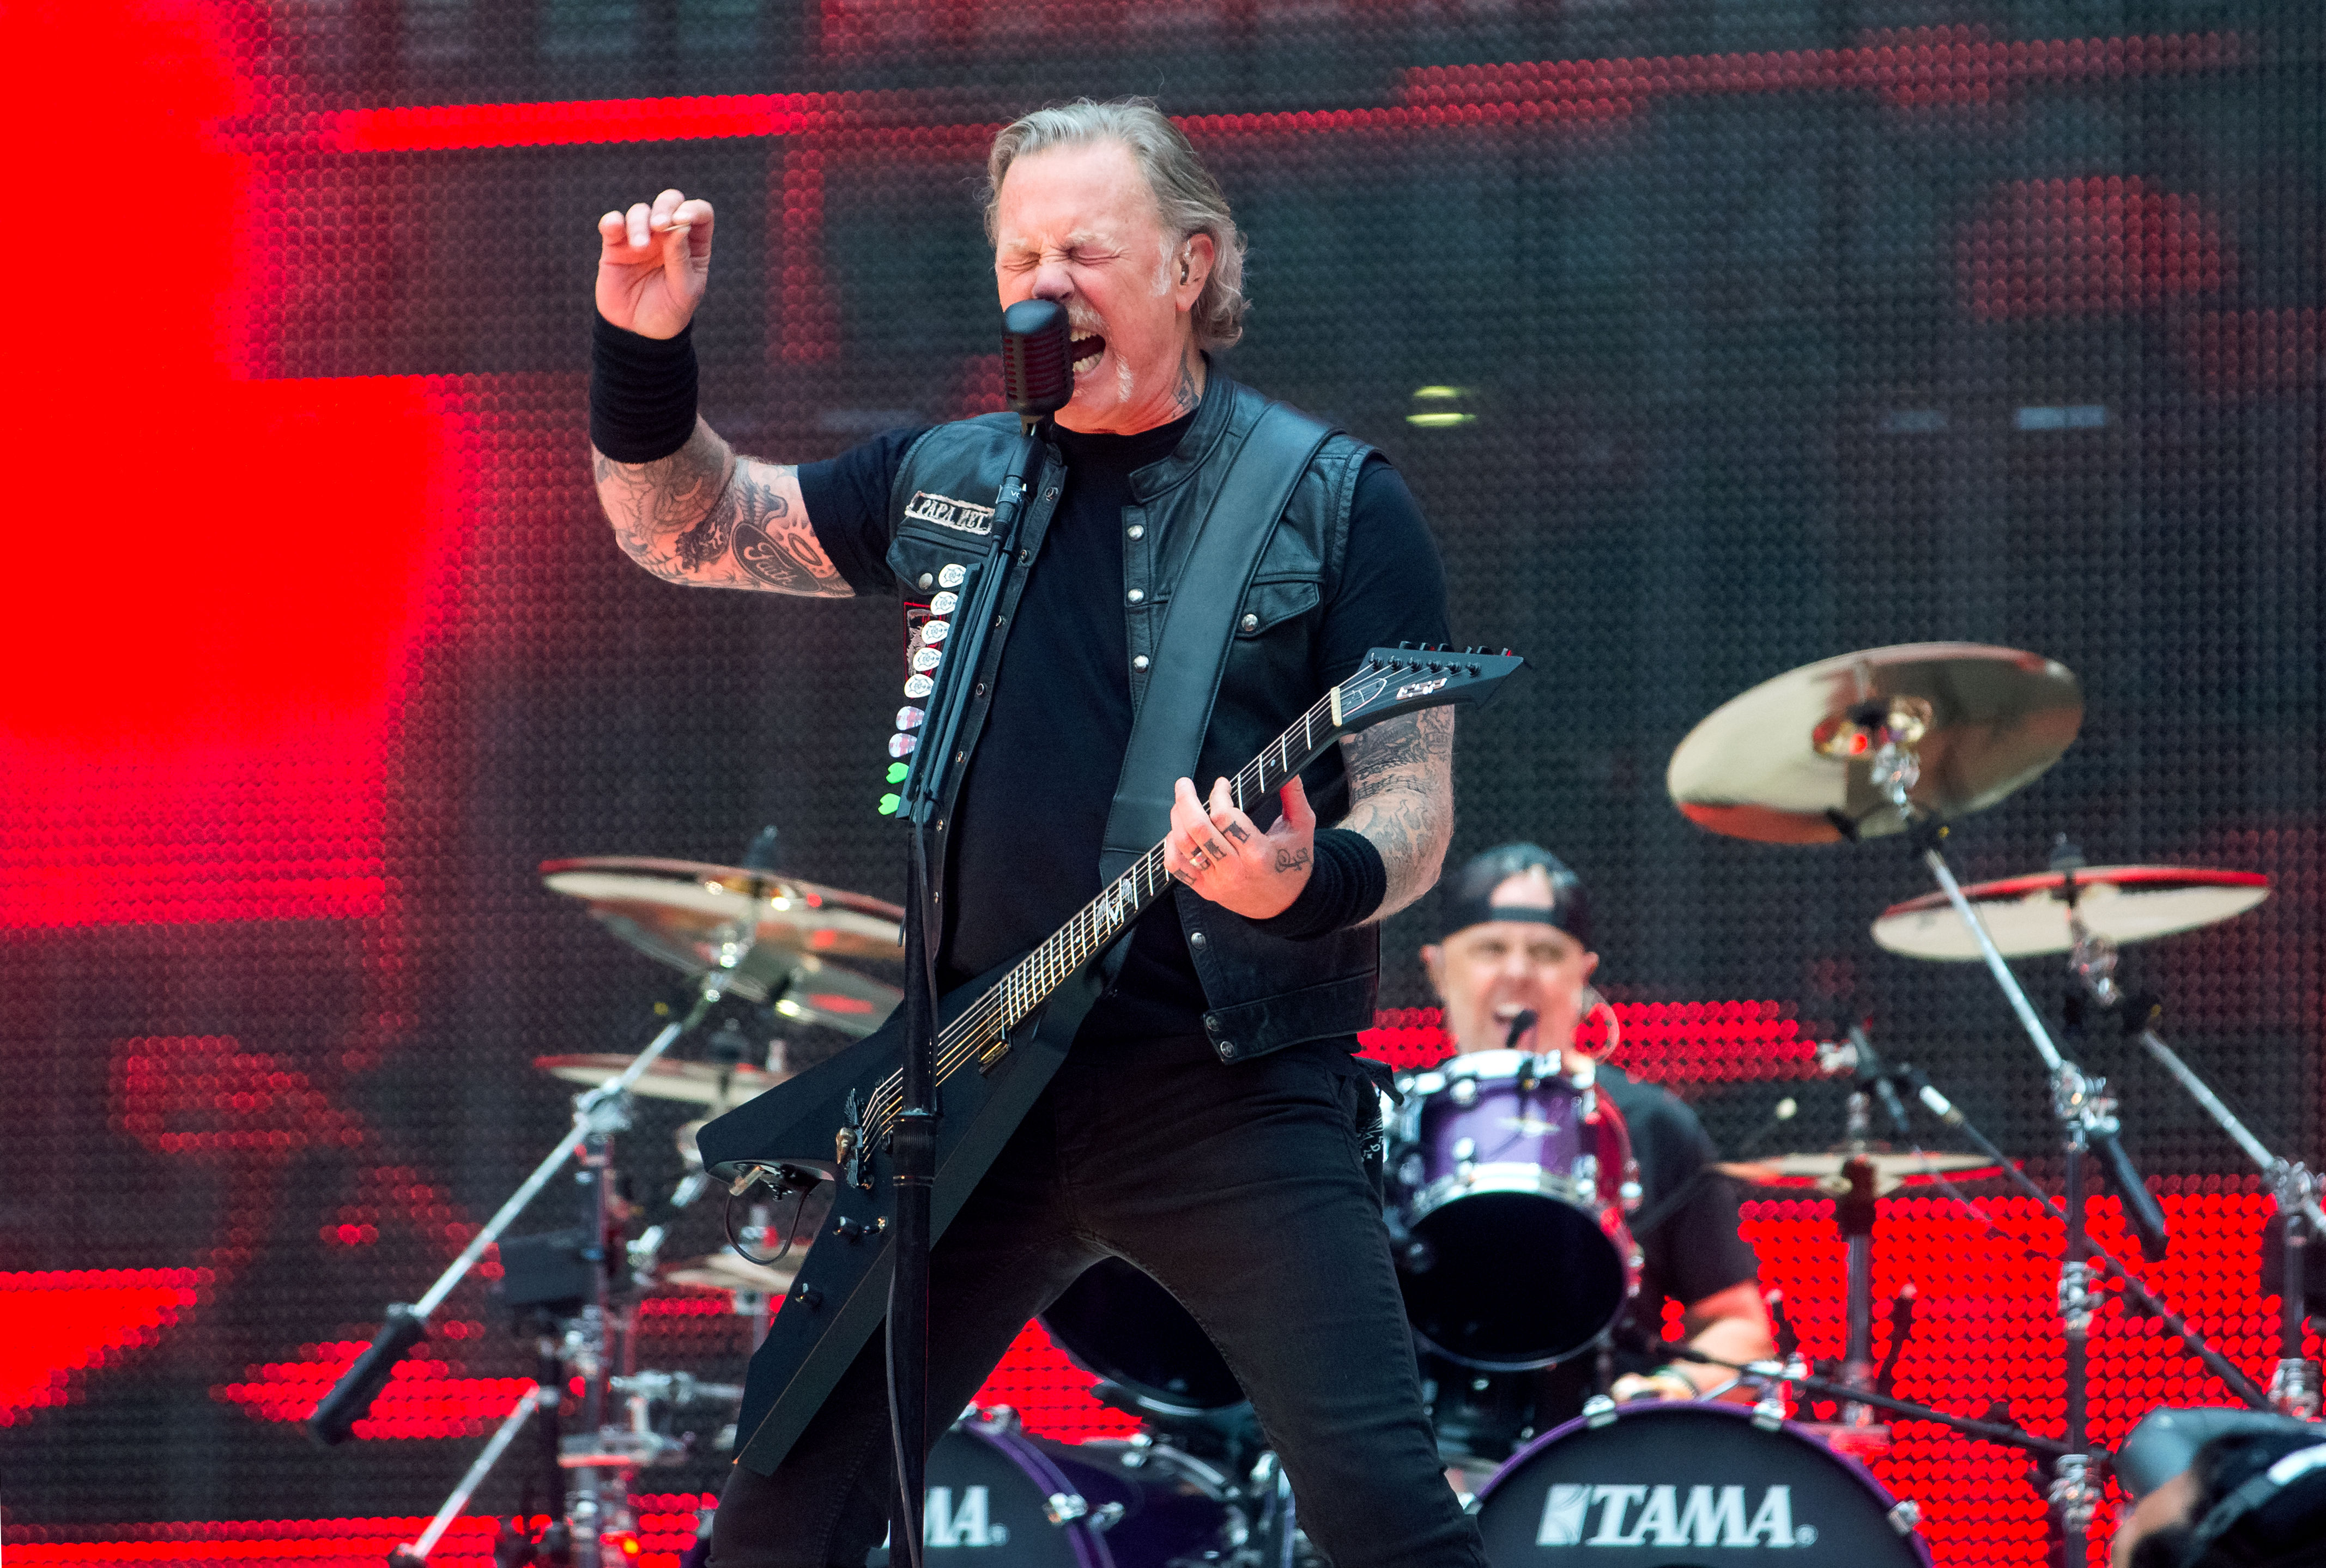 James Hetfield and Lars Ulrich of Metallica